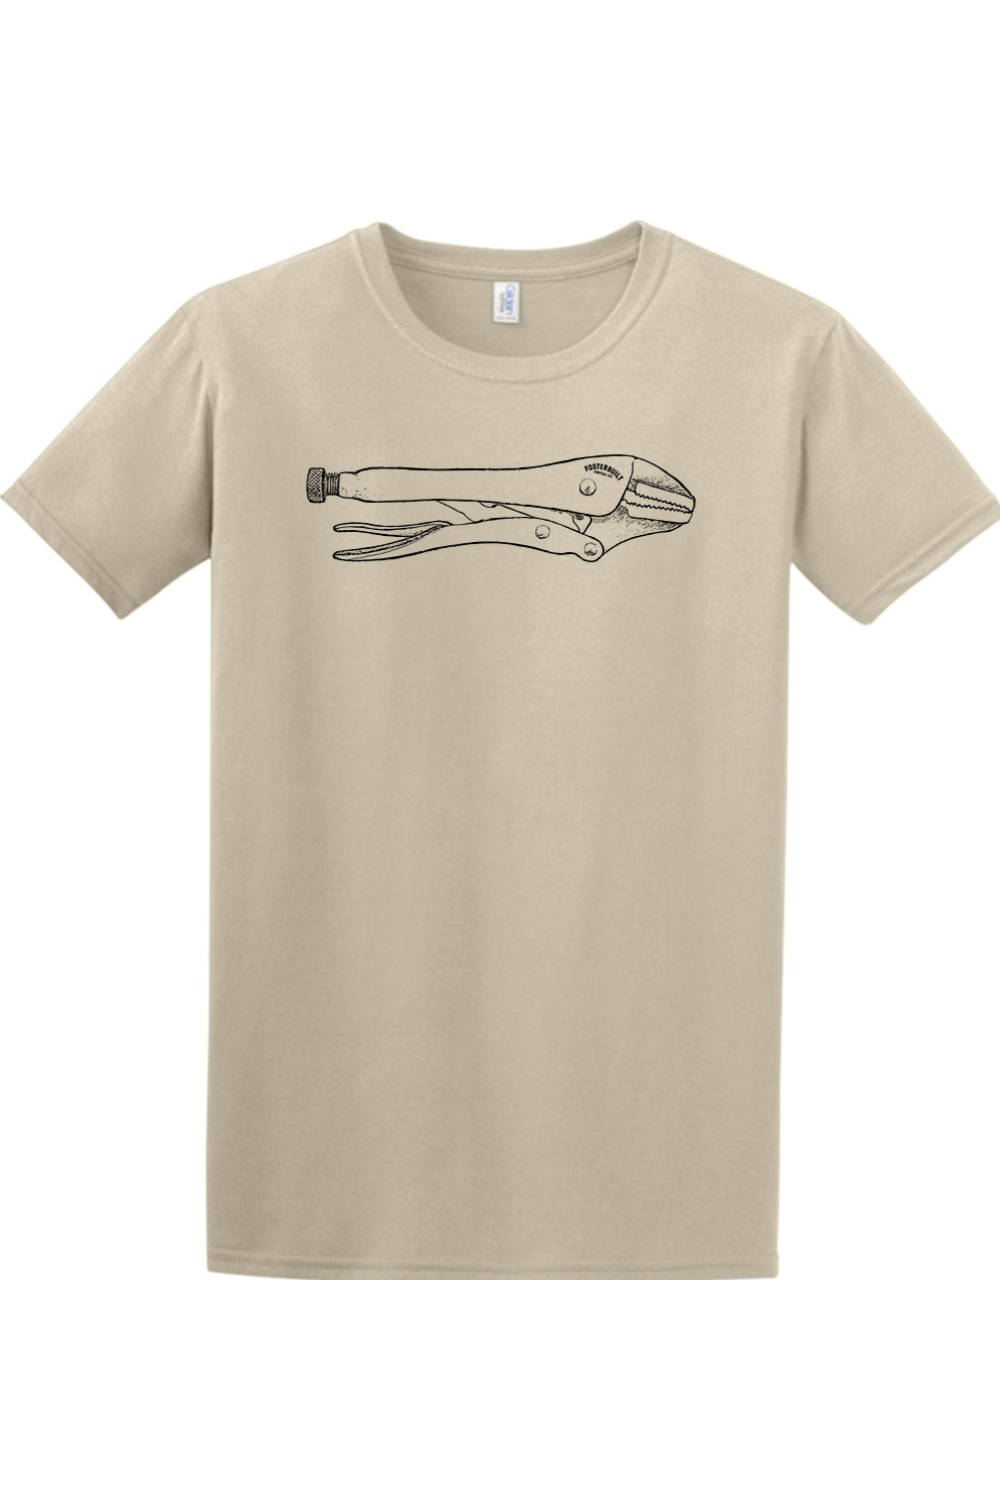 GRIP - Mens T-Shirt